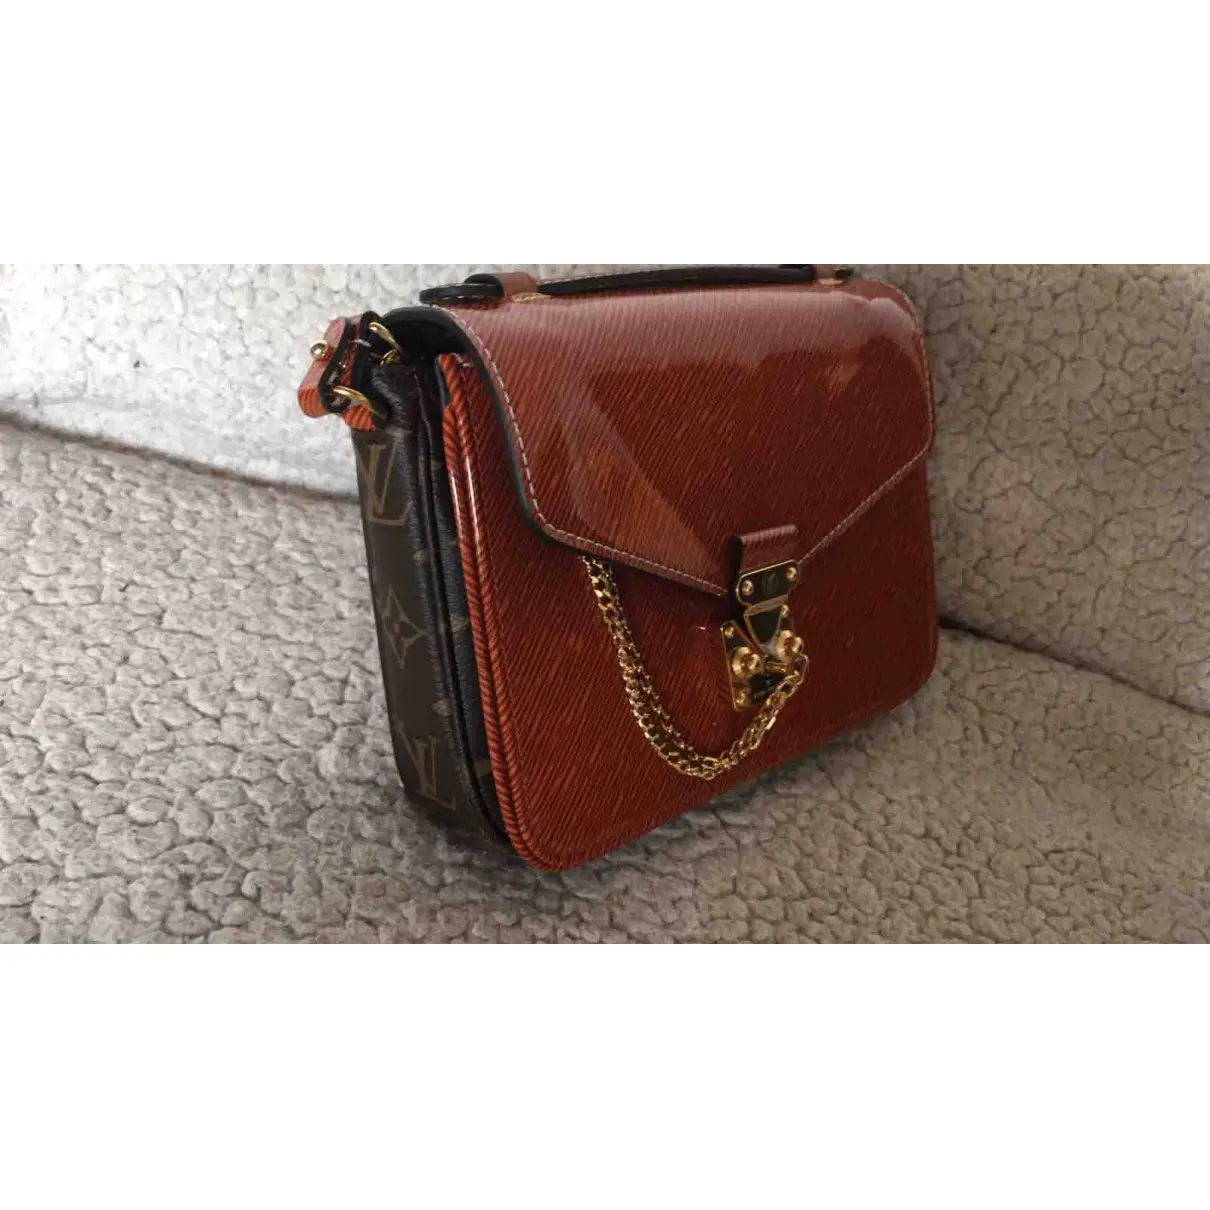 Louis Vuitton Metis patent leather handbag for sale